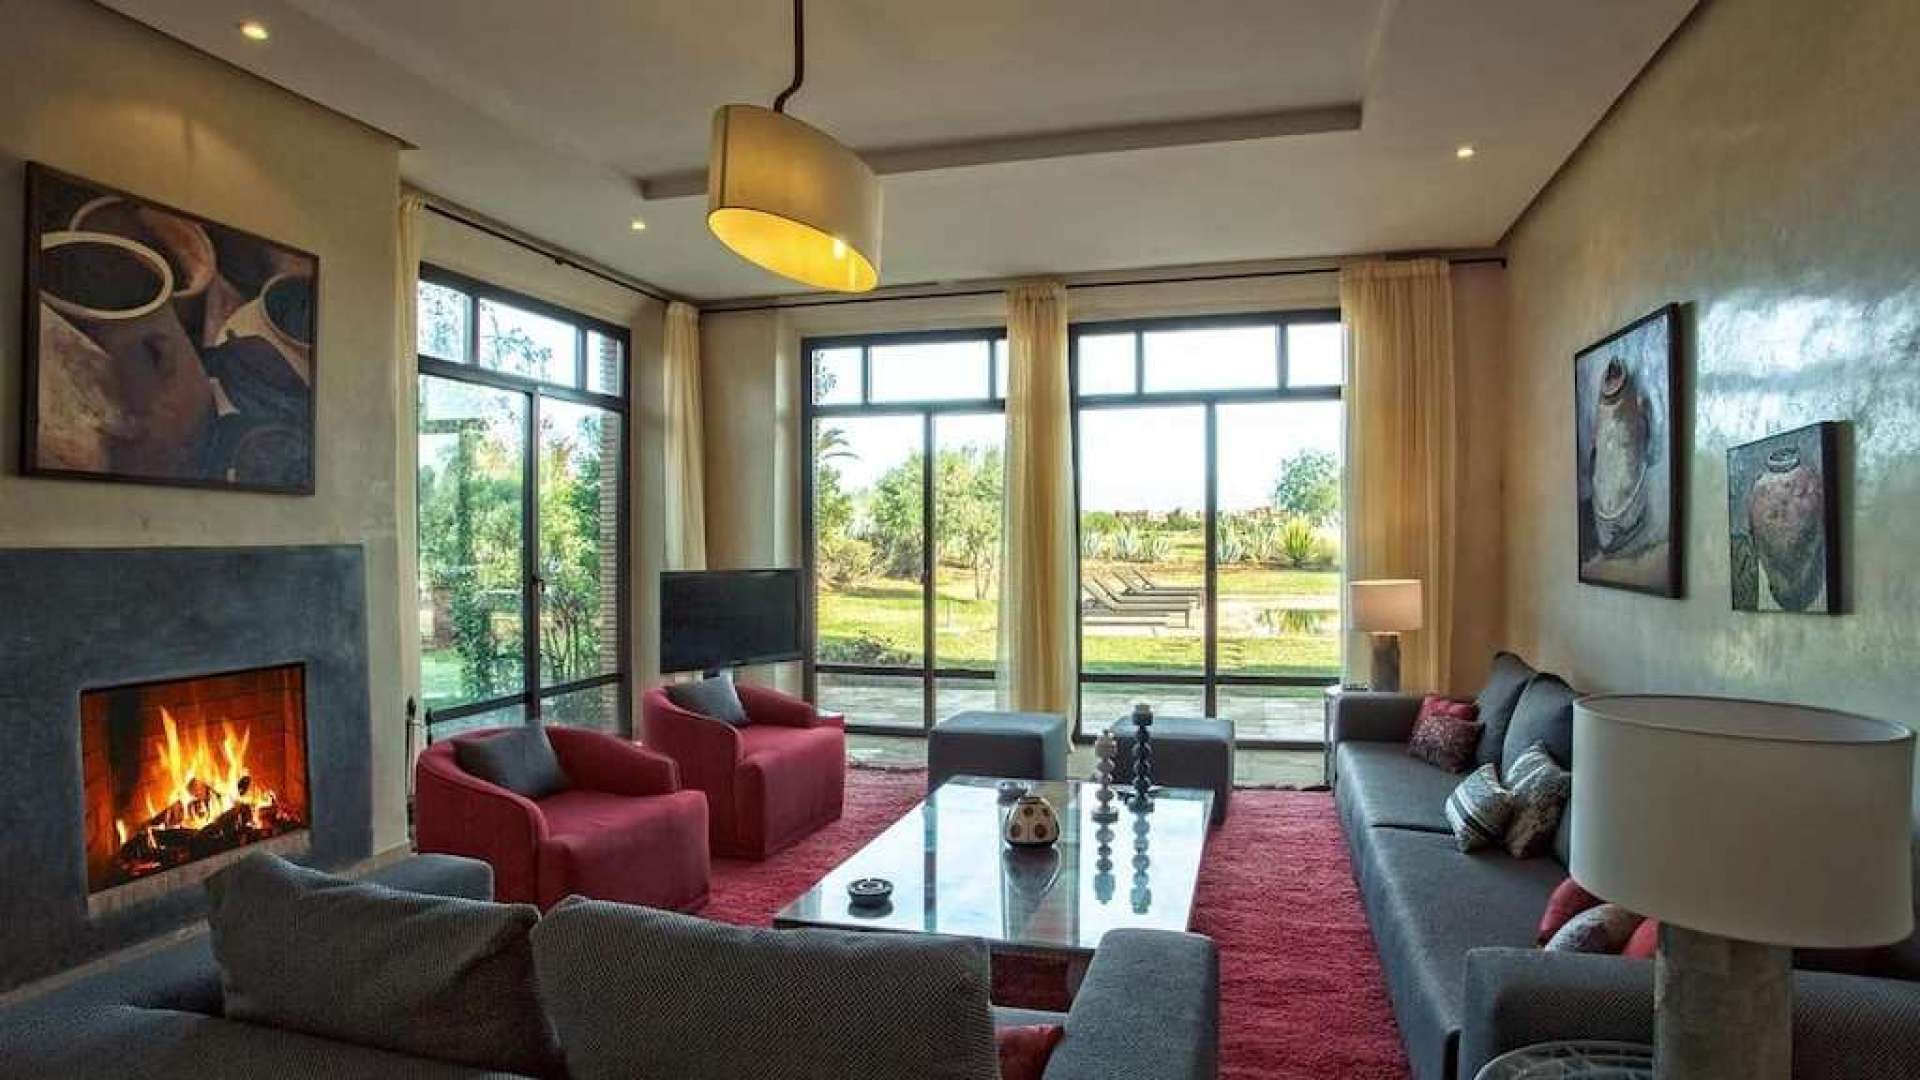 Location de vacances,Villa,Location de vacances villa de luxe 5 suites sur golf  à Marrakech,Marrakech,Golf Samanah